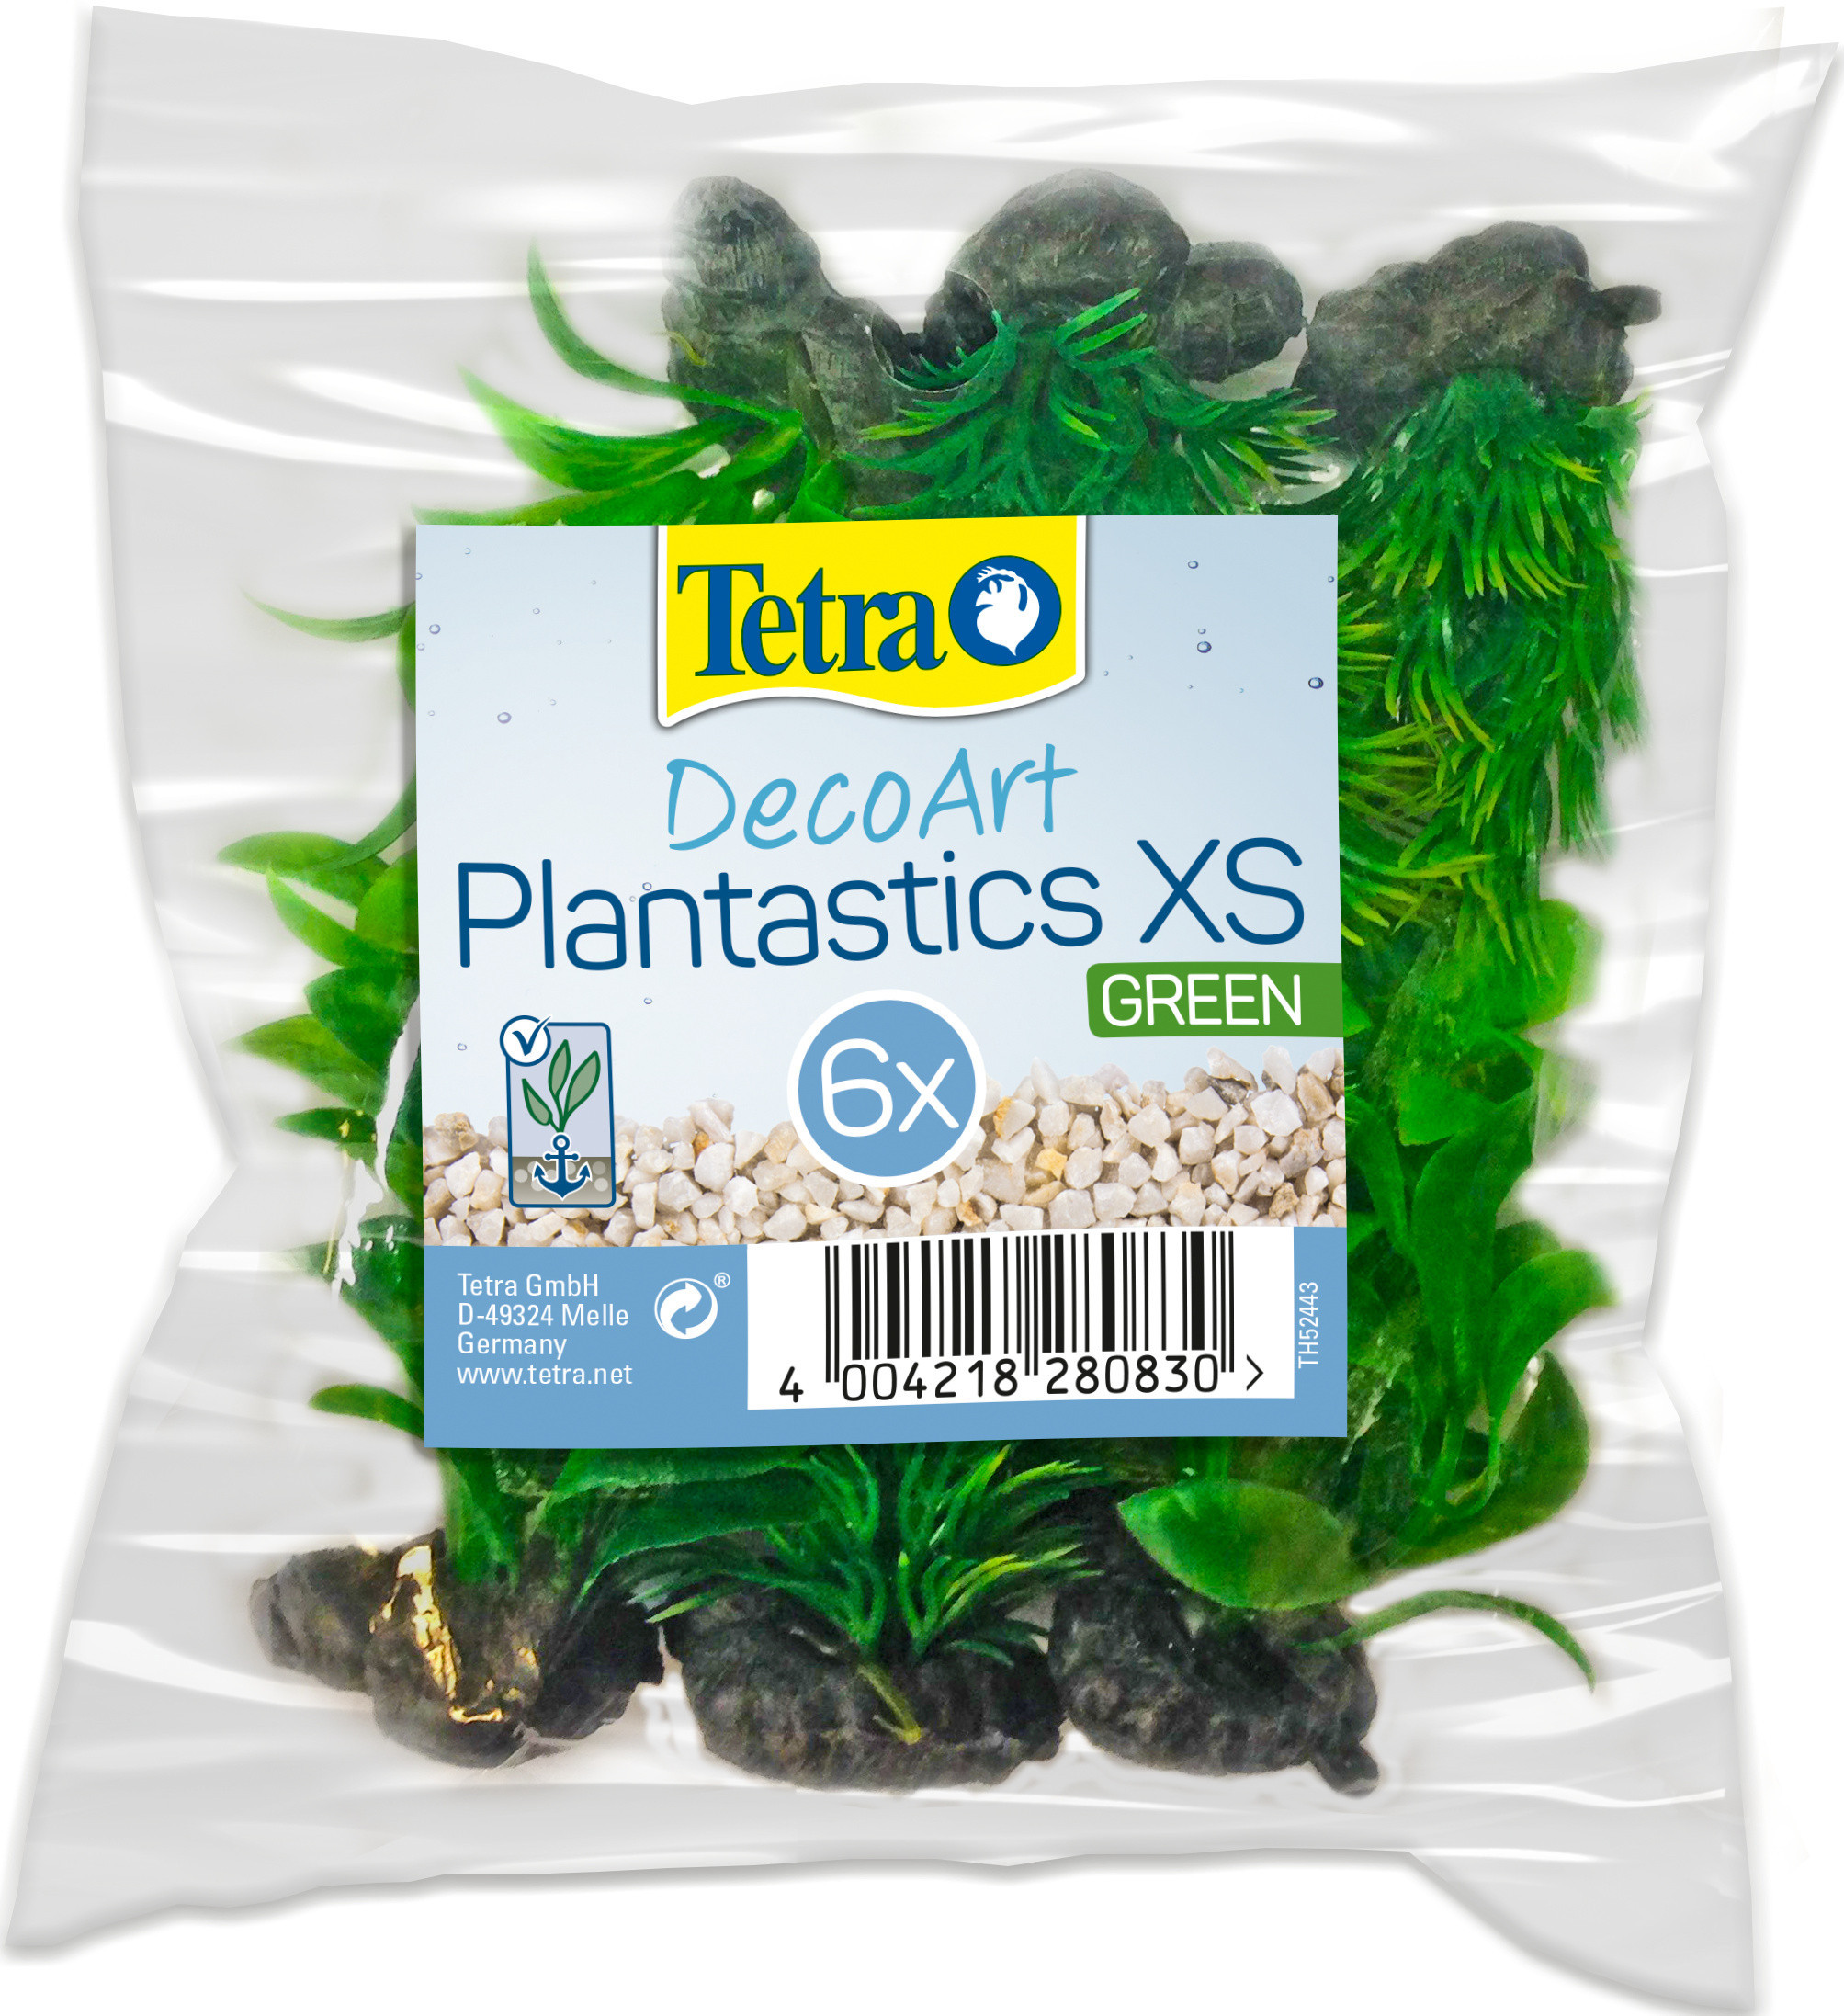 Tetra DecoArt Plantastic XS Green 6 szt T280830